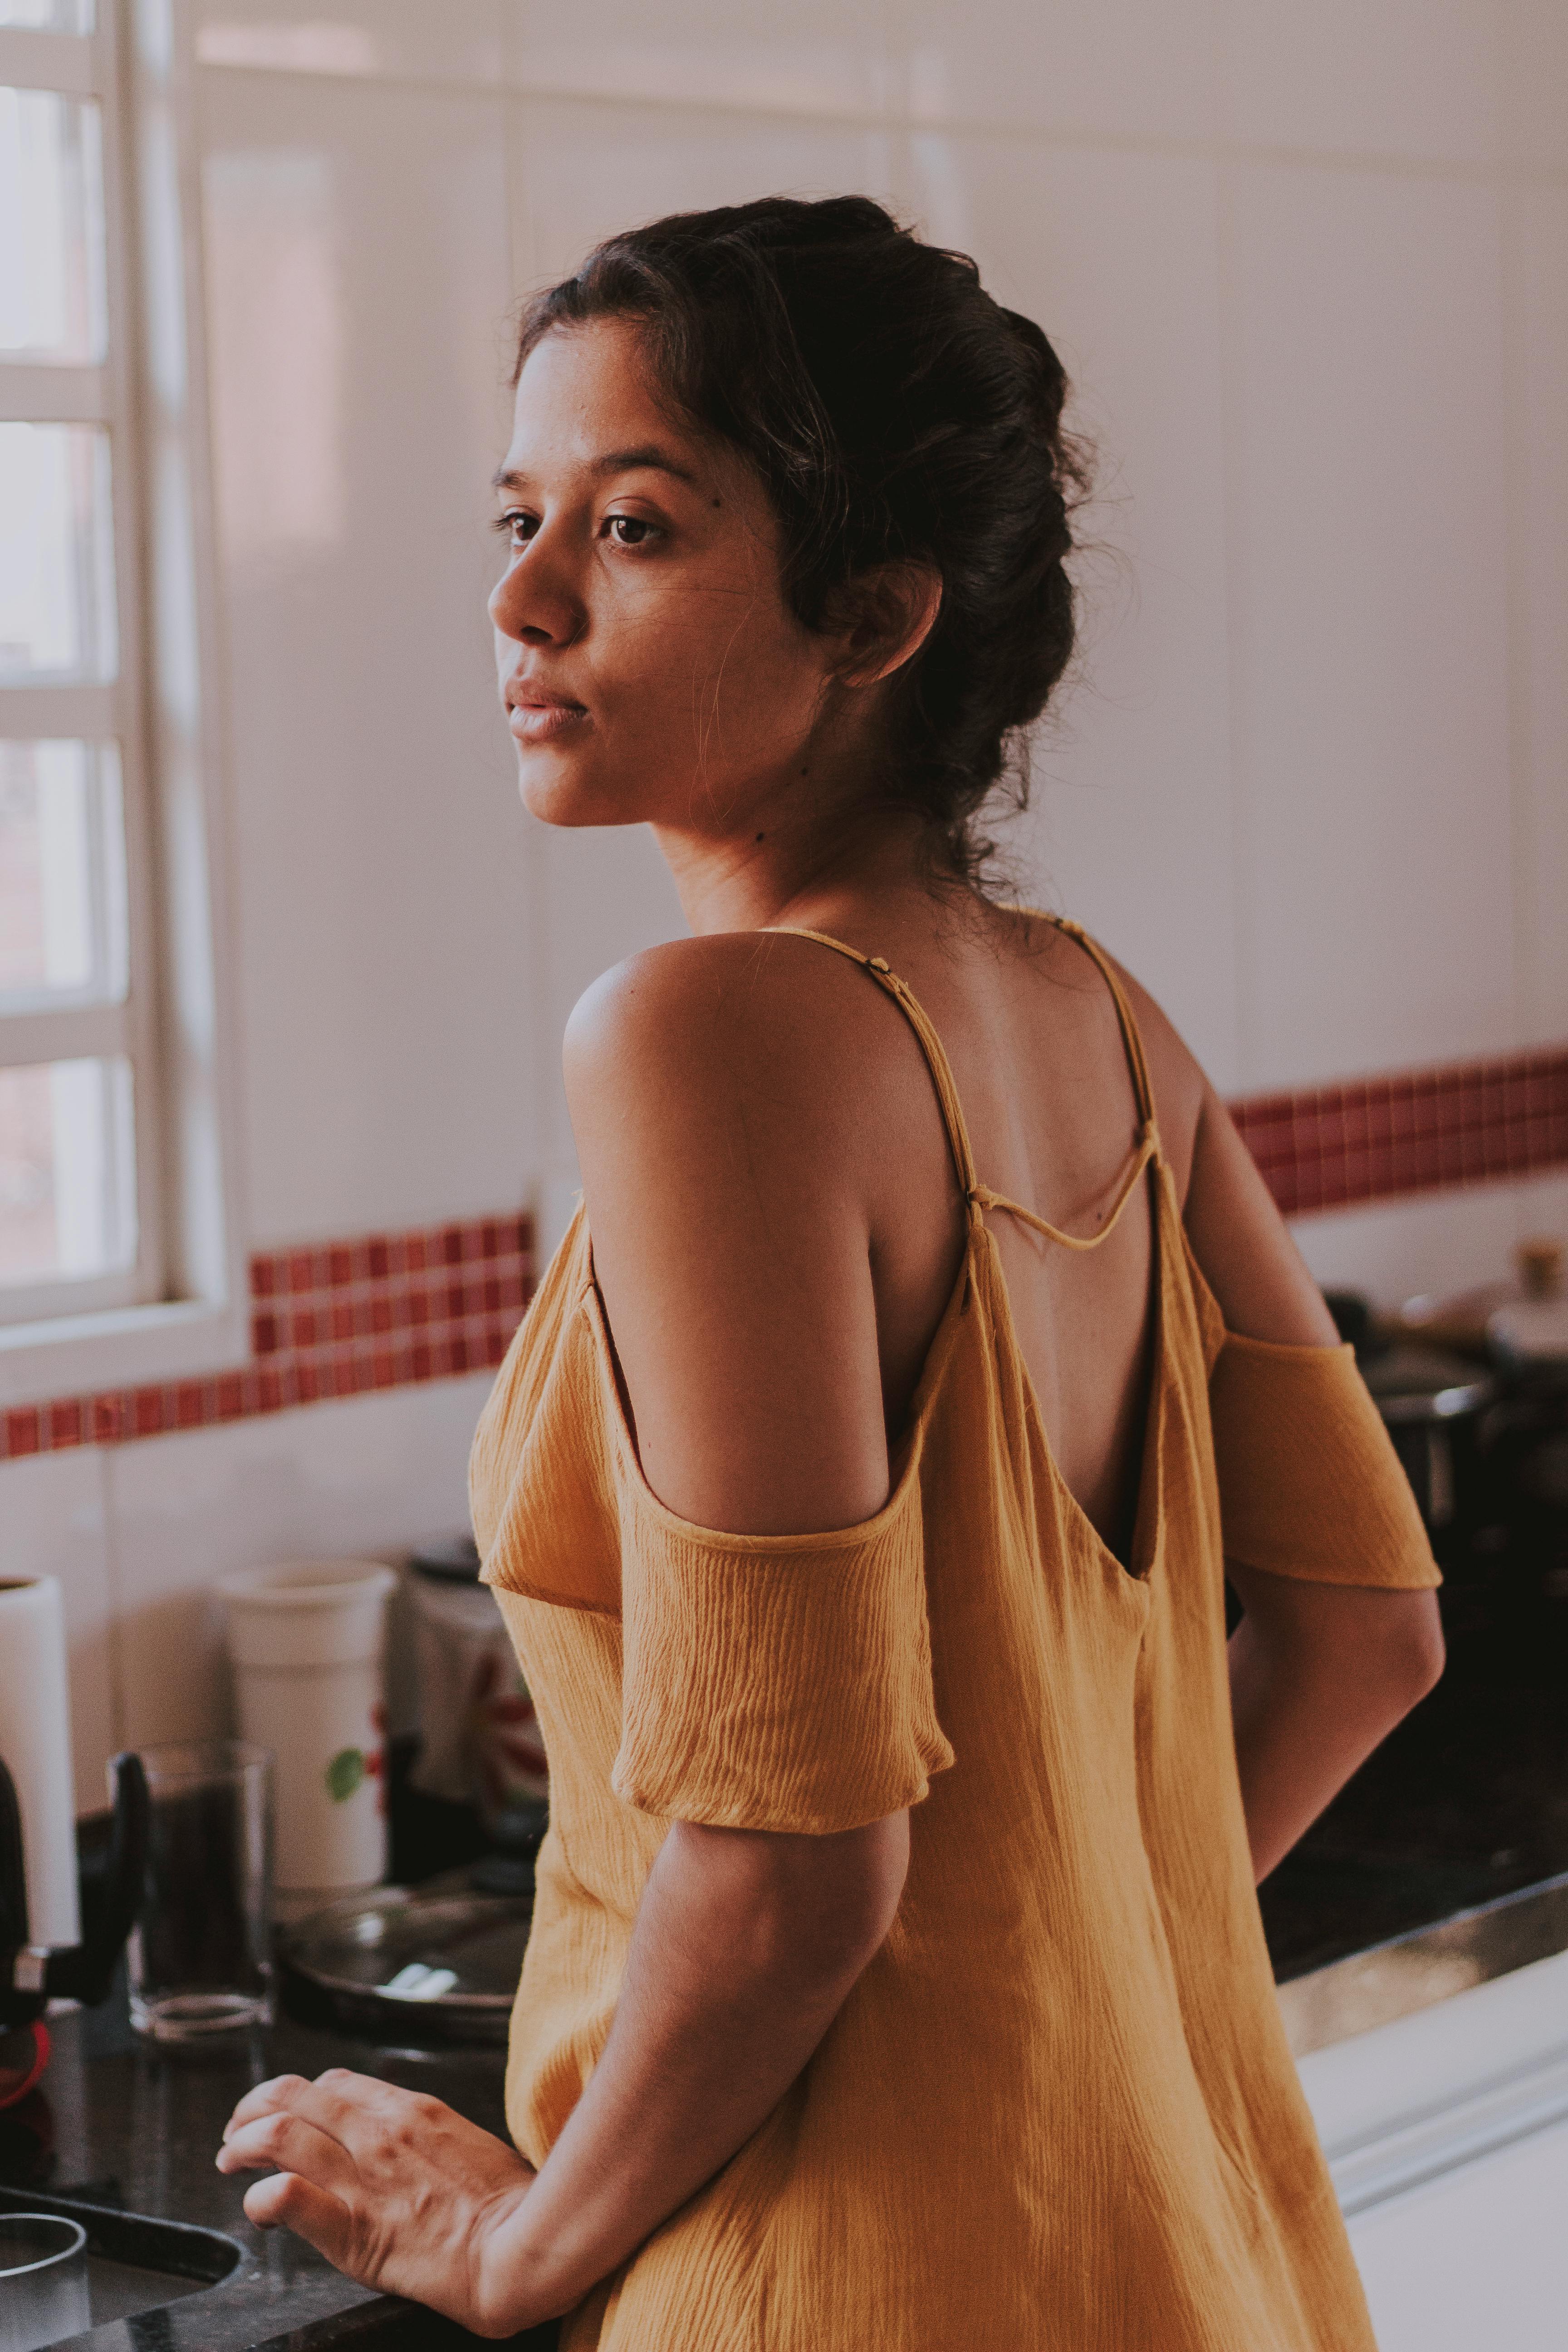 Une femme a l'air contrariée alors qu'elle se tient dans la cuisine | Source : Pexels